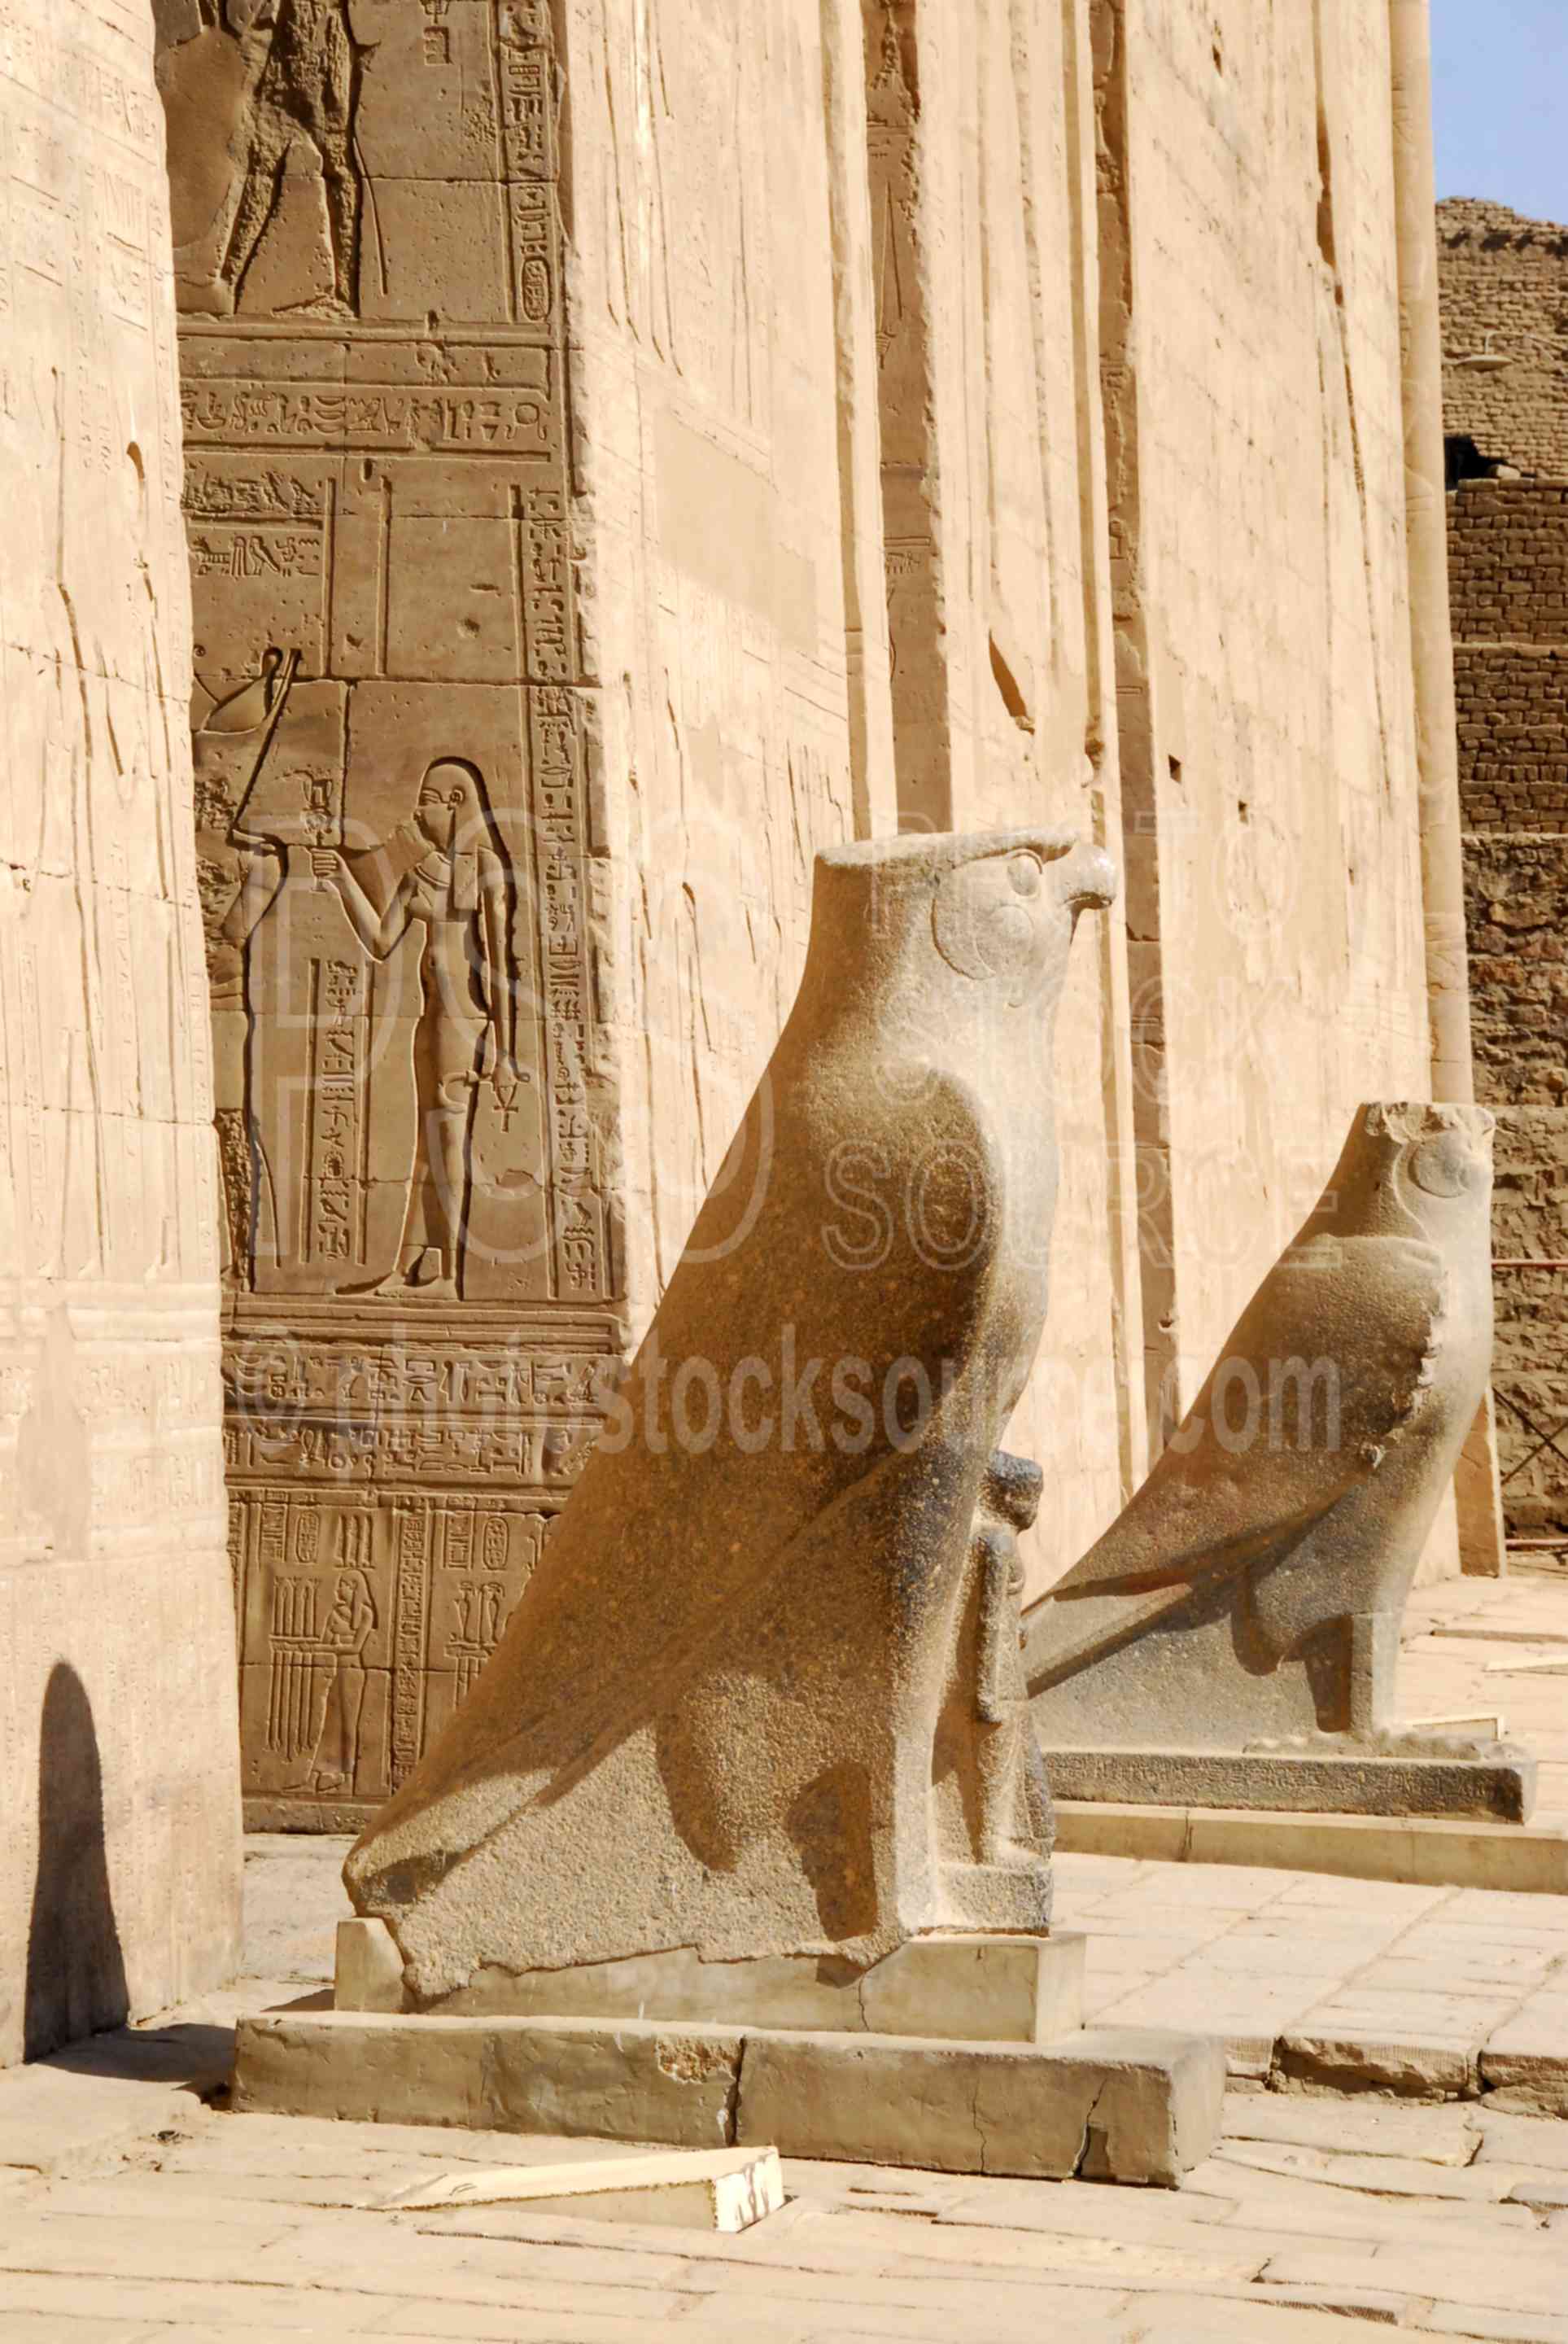 Horus Statues,temple,idfu,behdet,ptolemy,horus,statue,architecture,temples